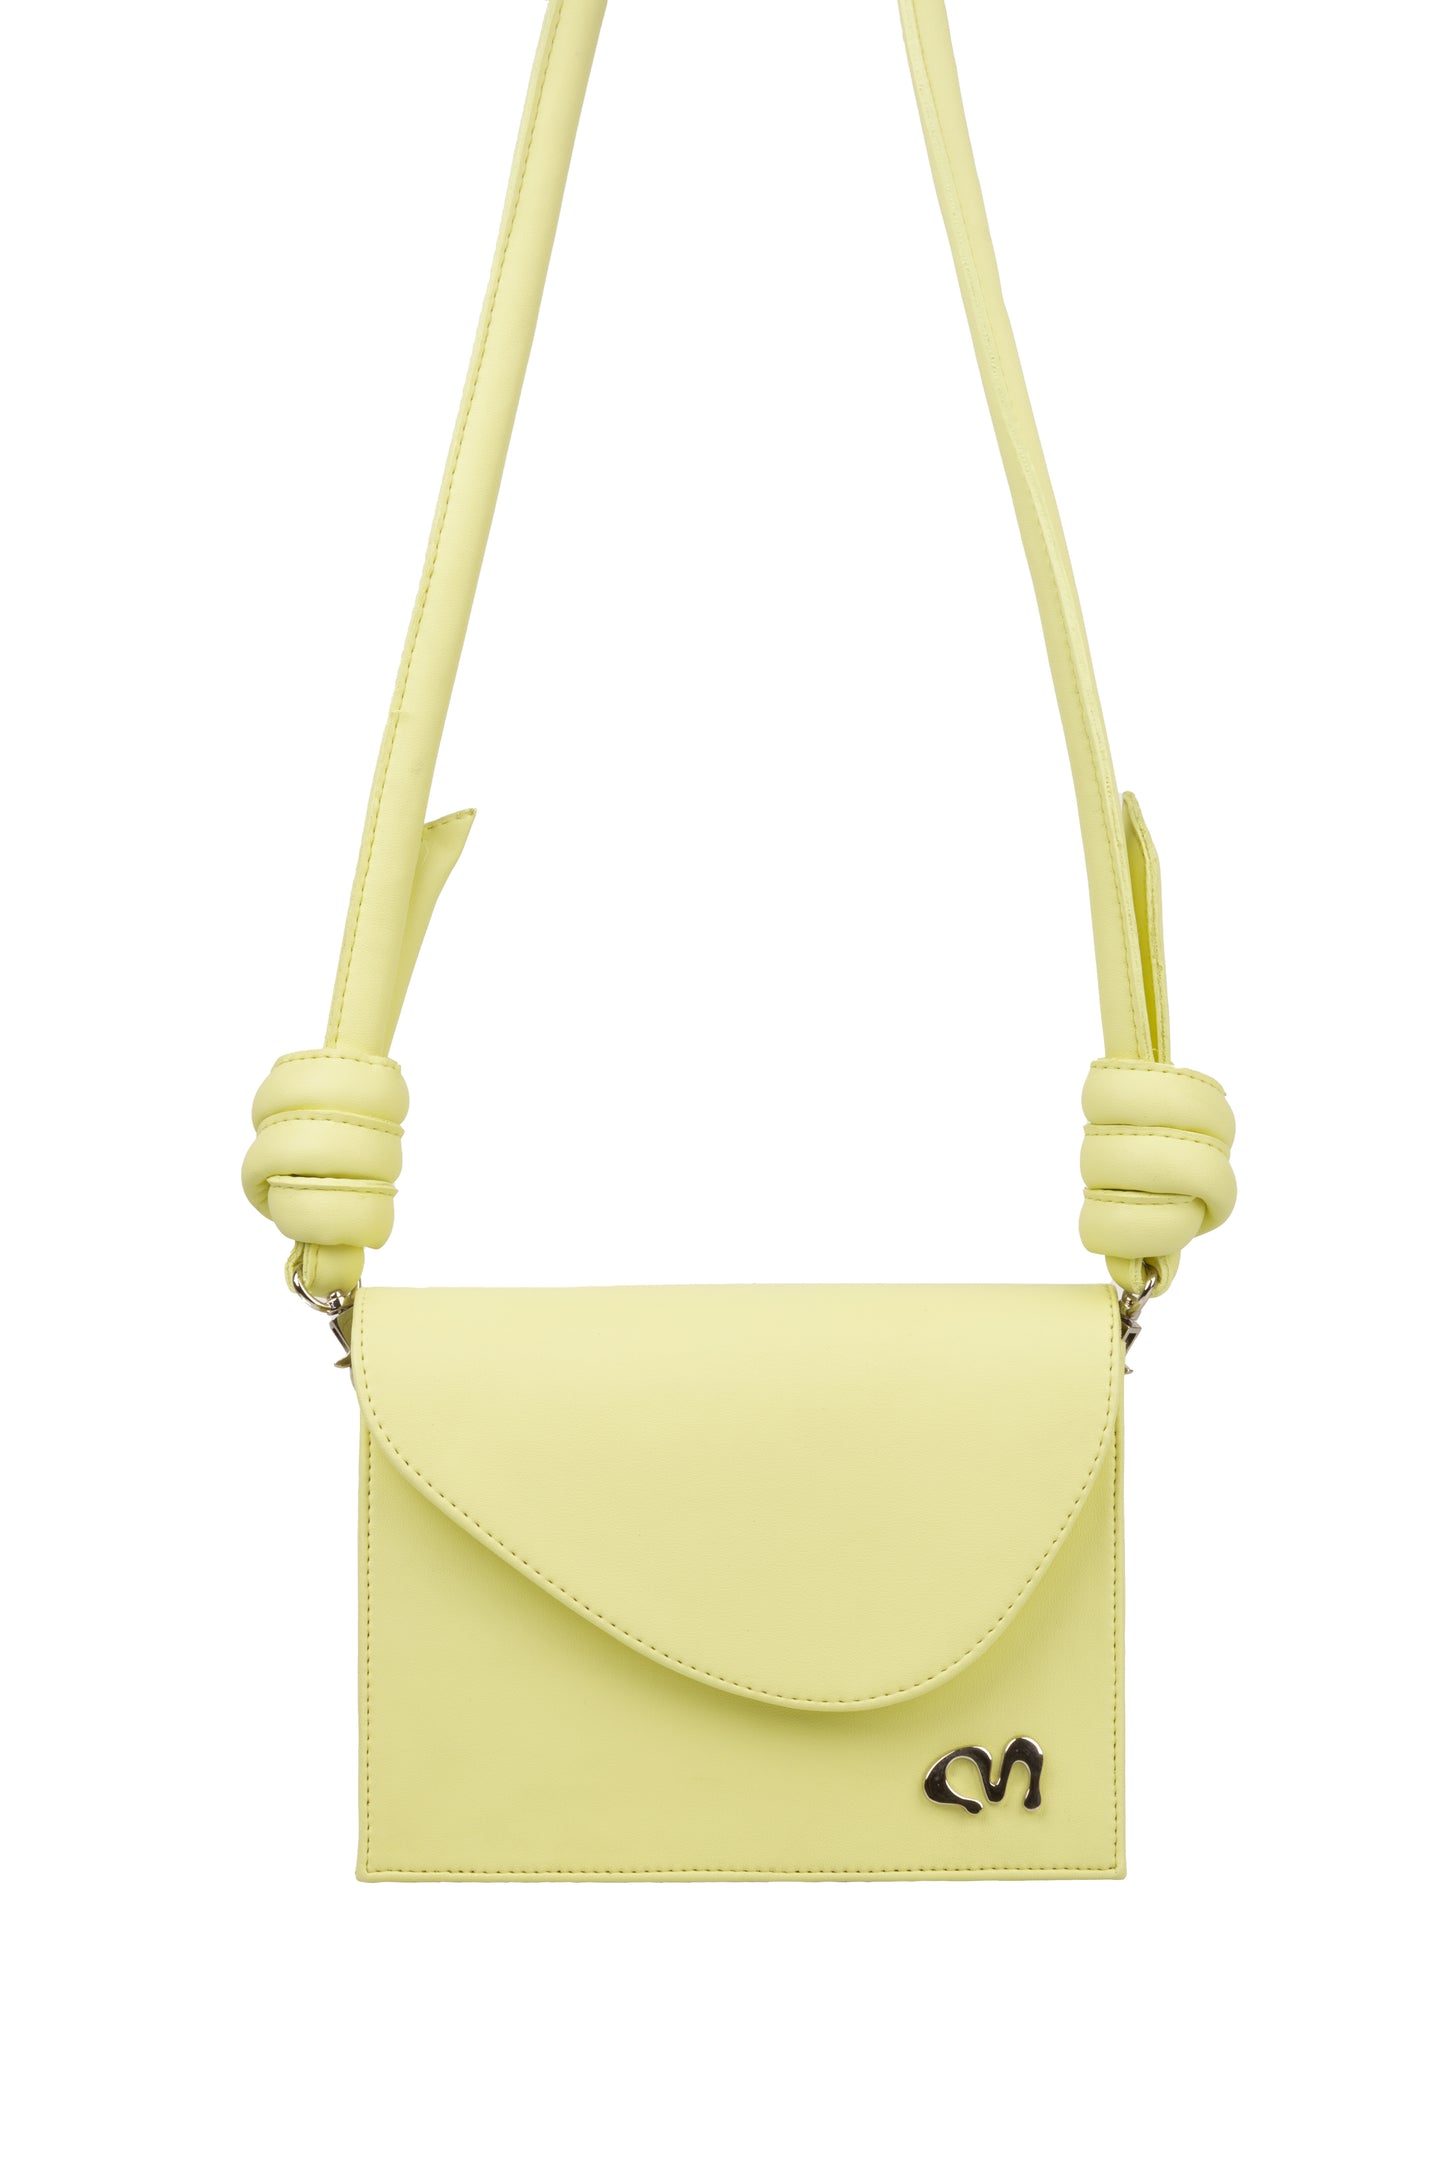 Lemon Yellow Little Bag